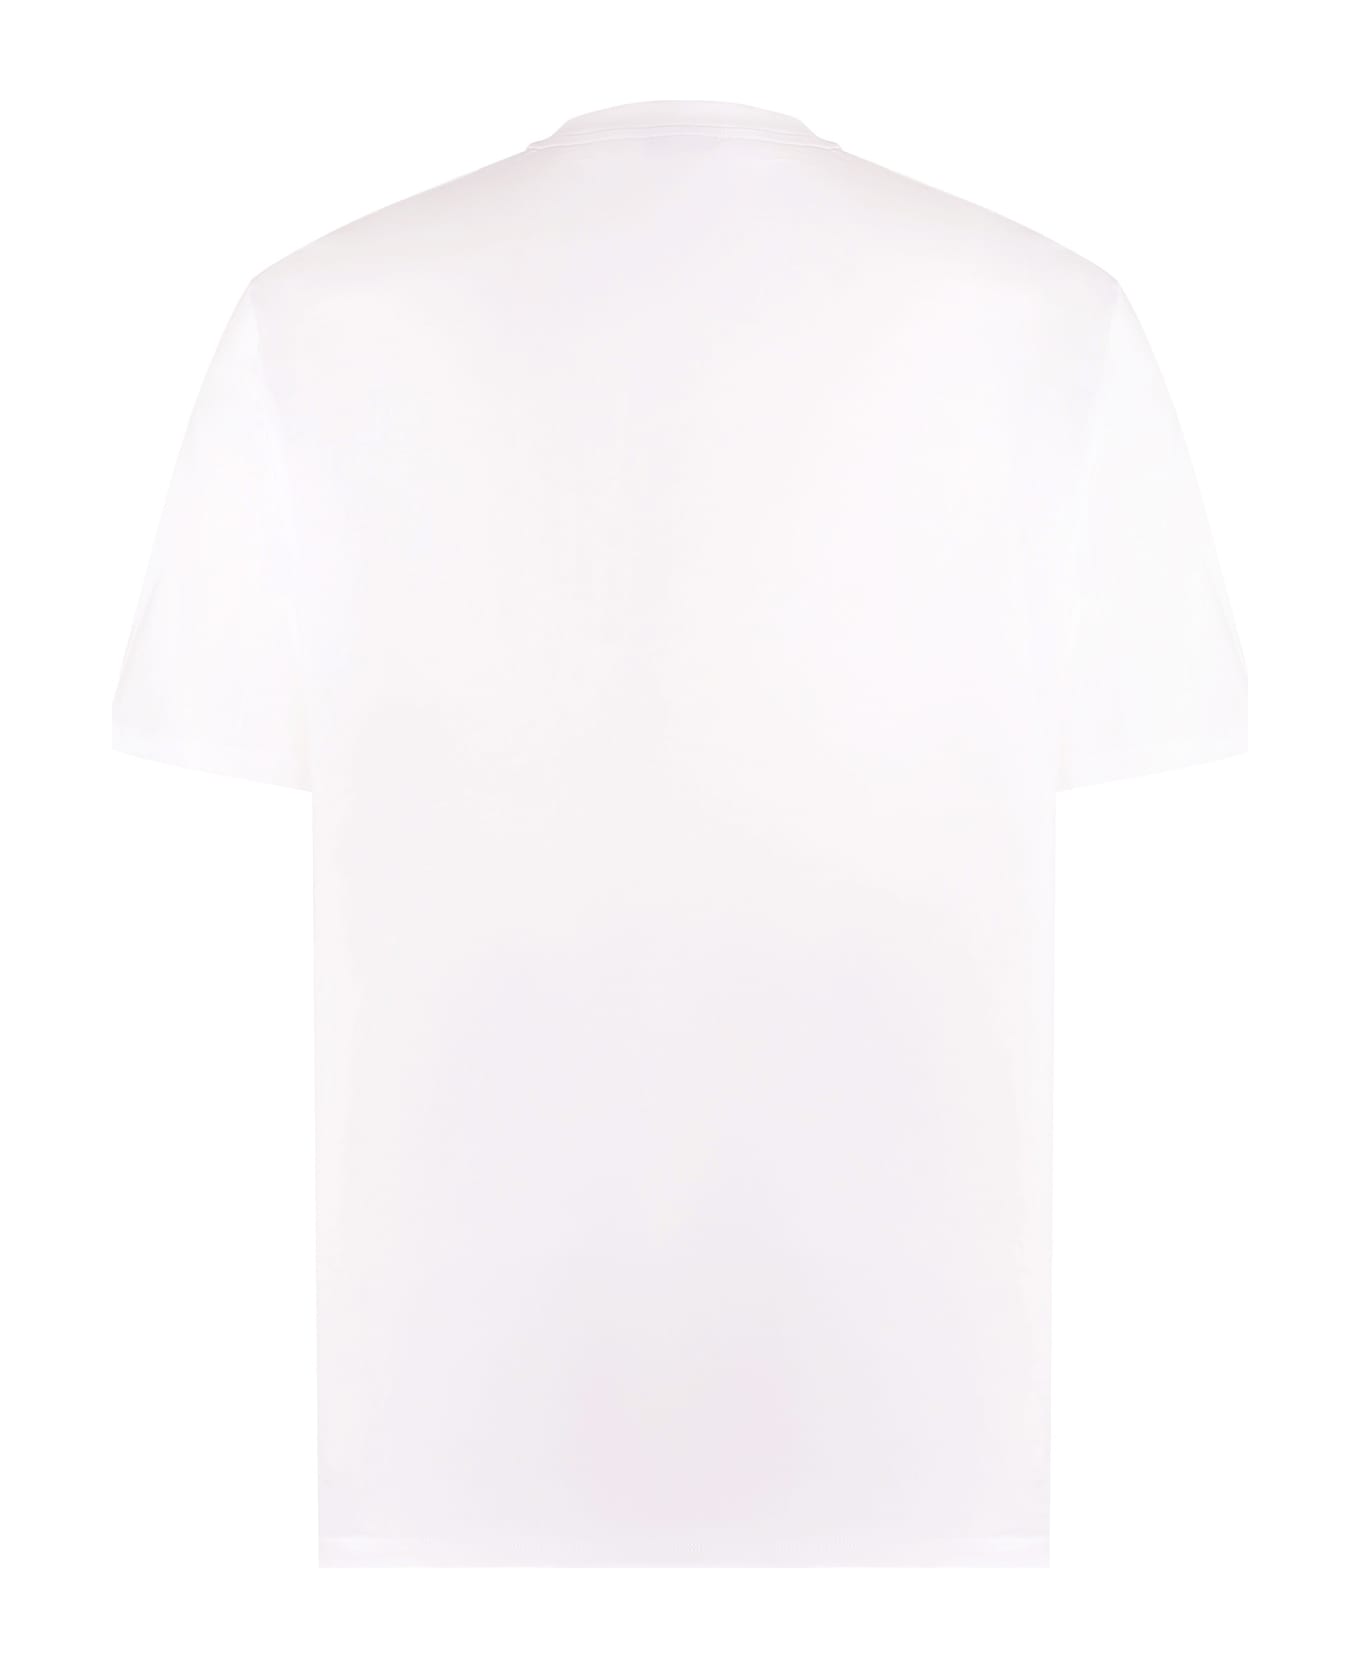 Lanvin Logo Cotton T-shirt - White シャツ